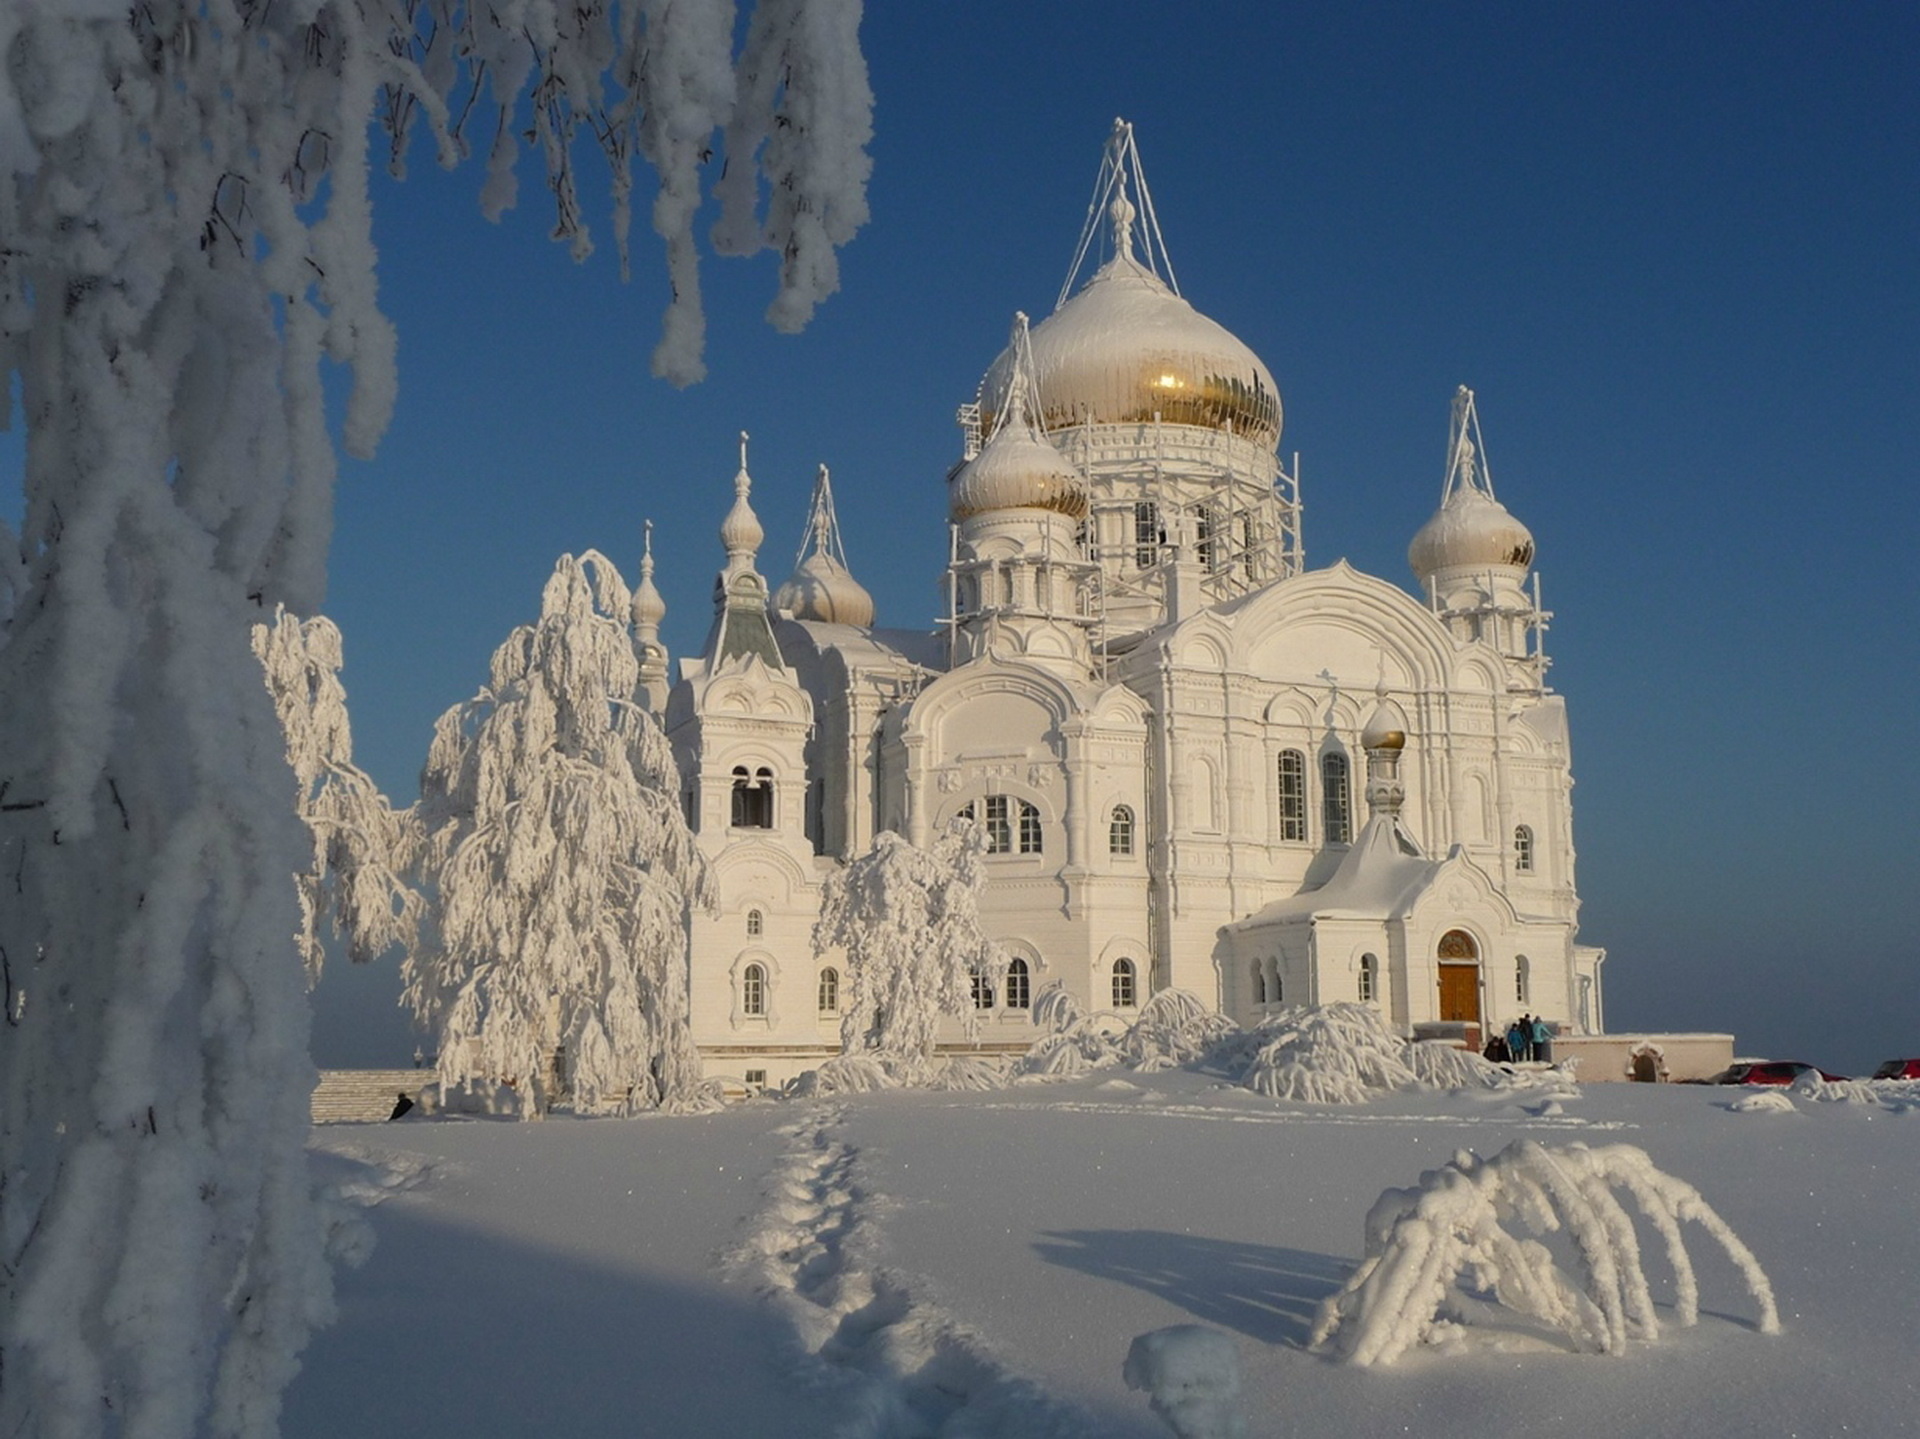 Скачать обои бесплатно Снег, Дерево, Белый, Россия, Церковь, Церкви, Религиозные картинка на рабочий стол ПК